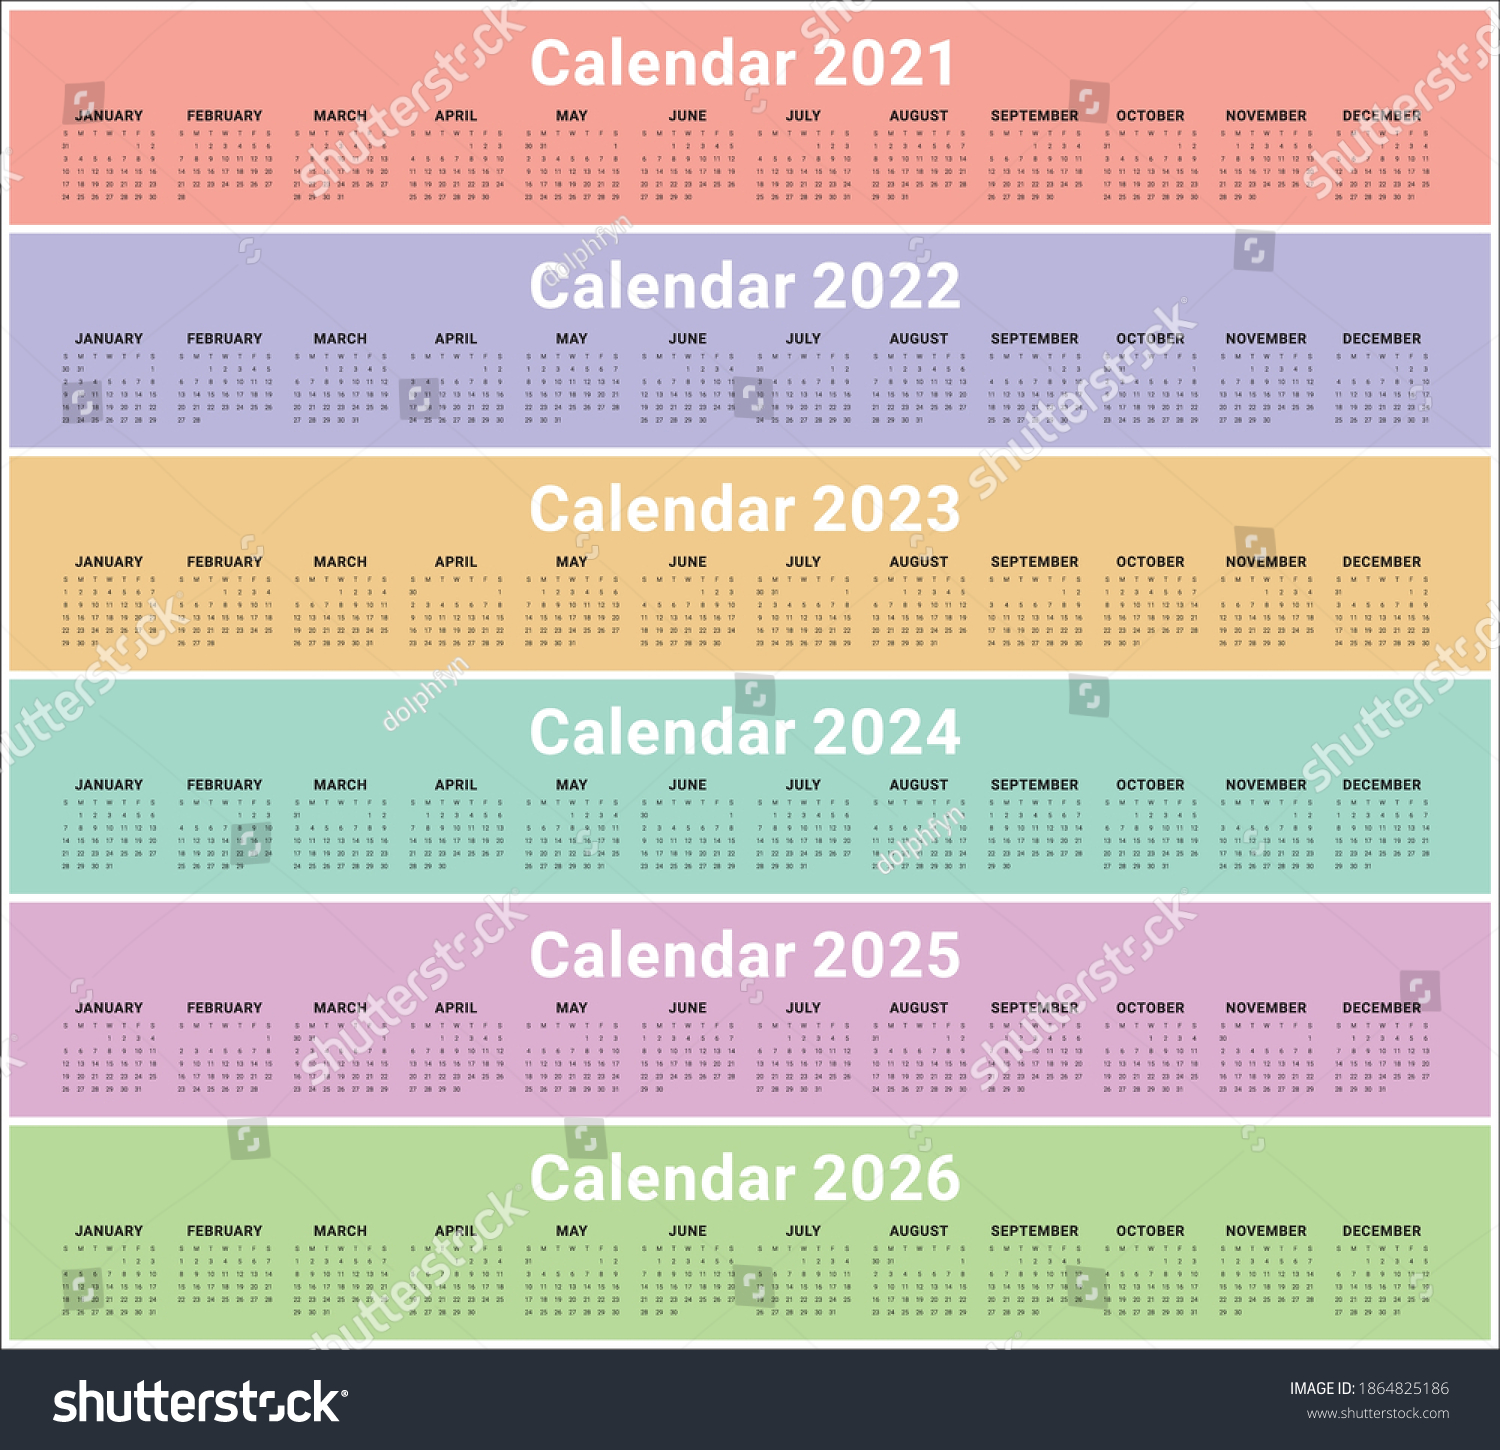 year-2021-2022-2023-2024-2025-1864825186-shutterstock